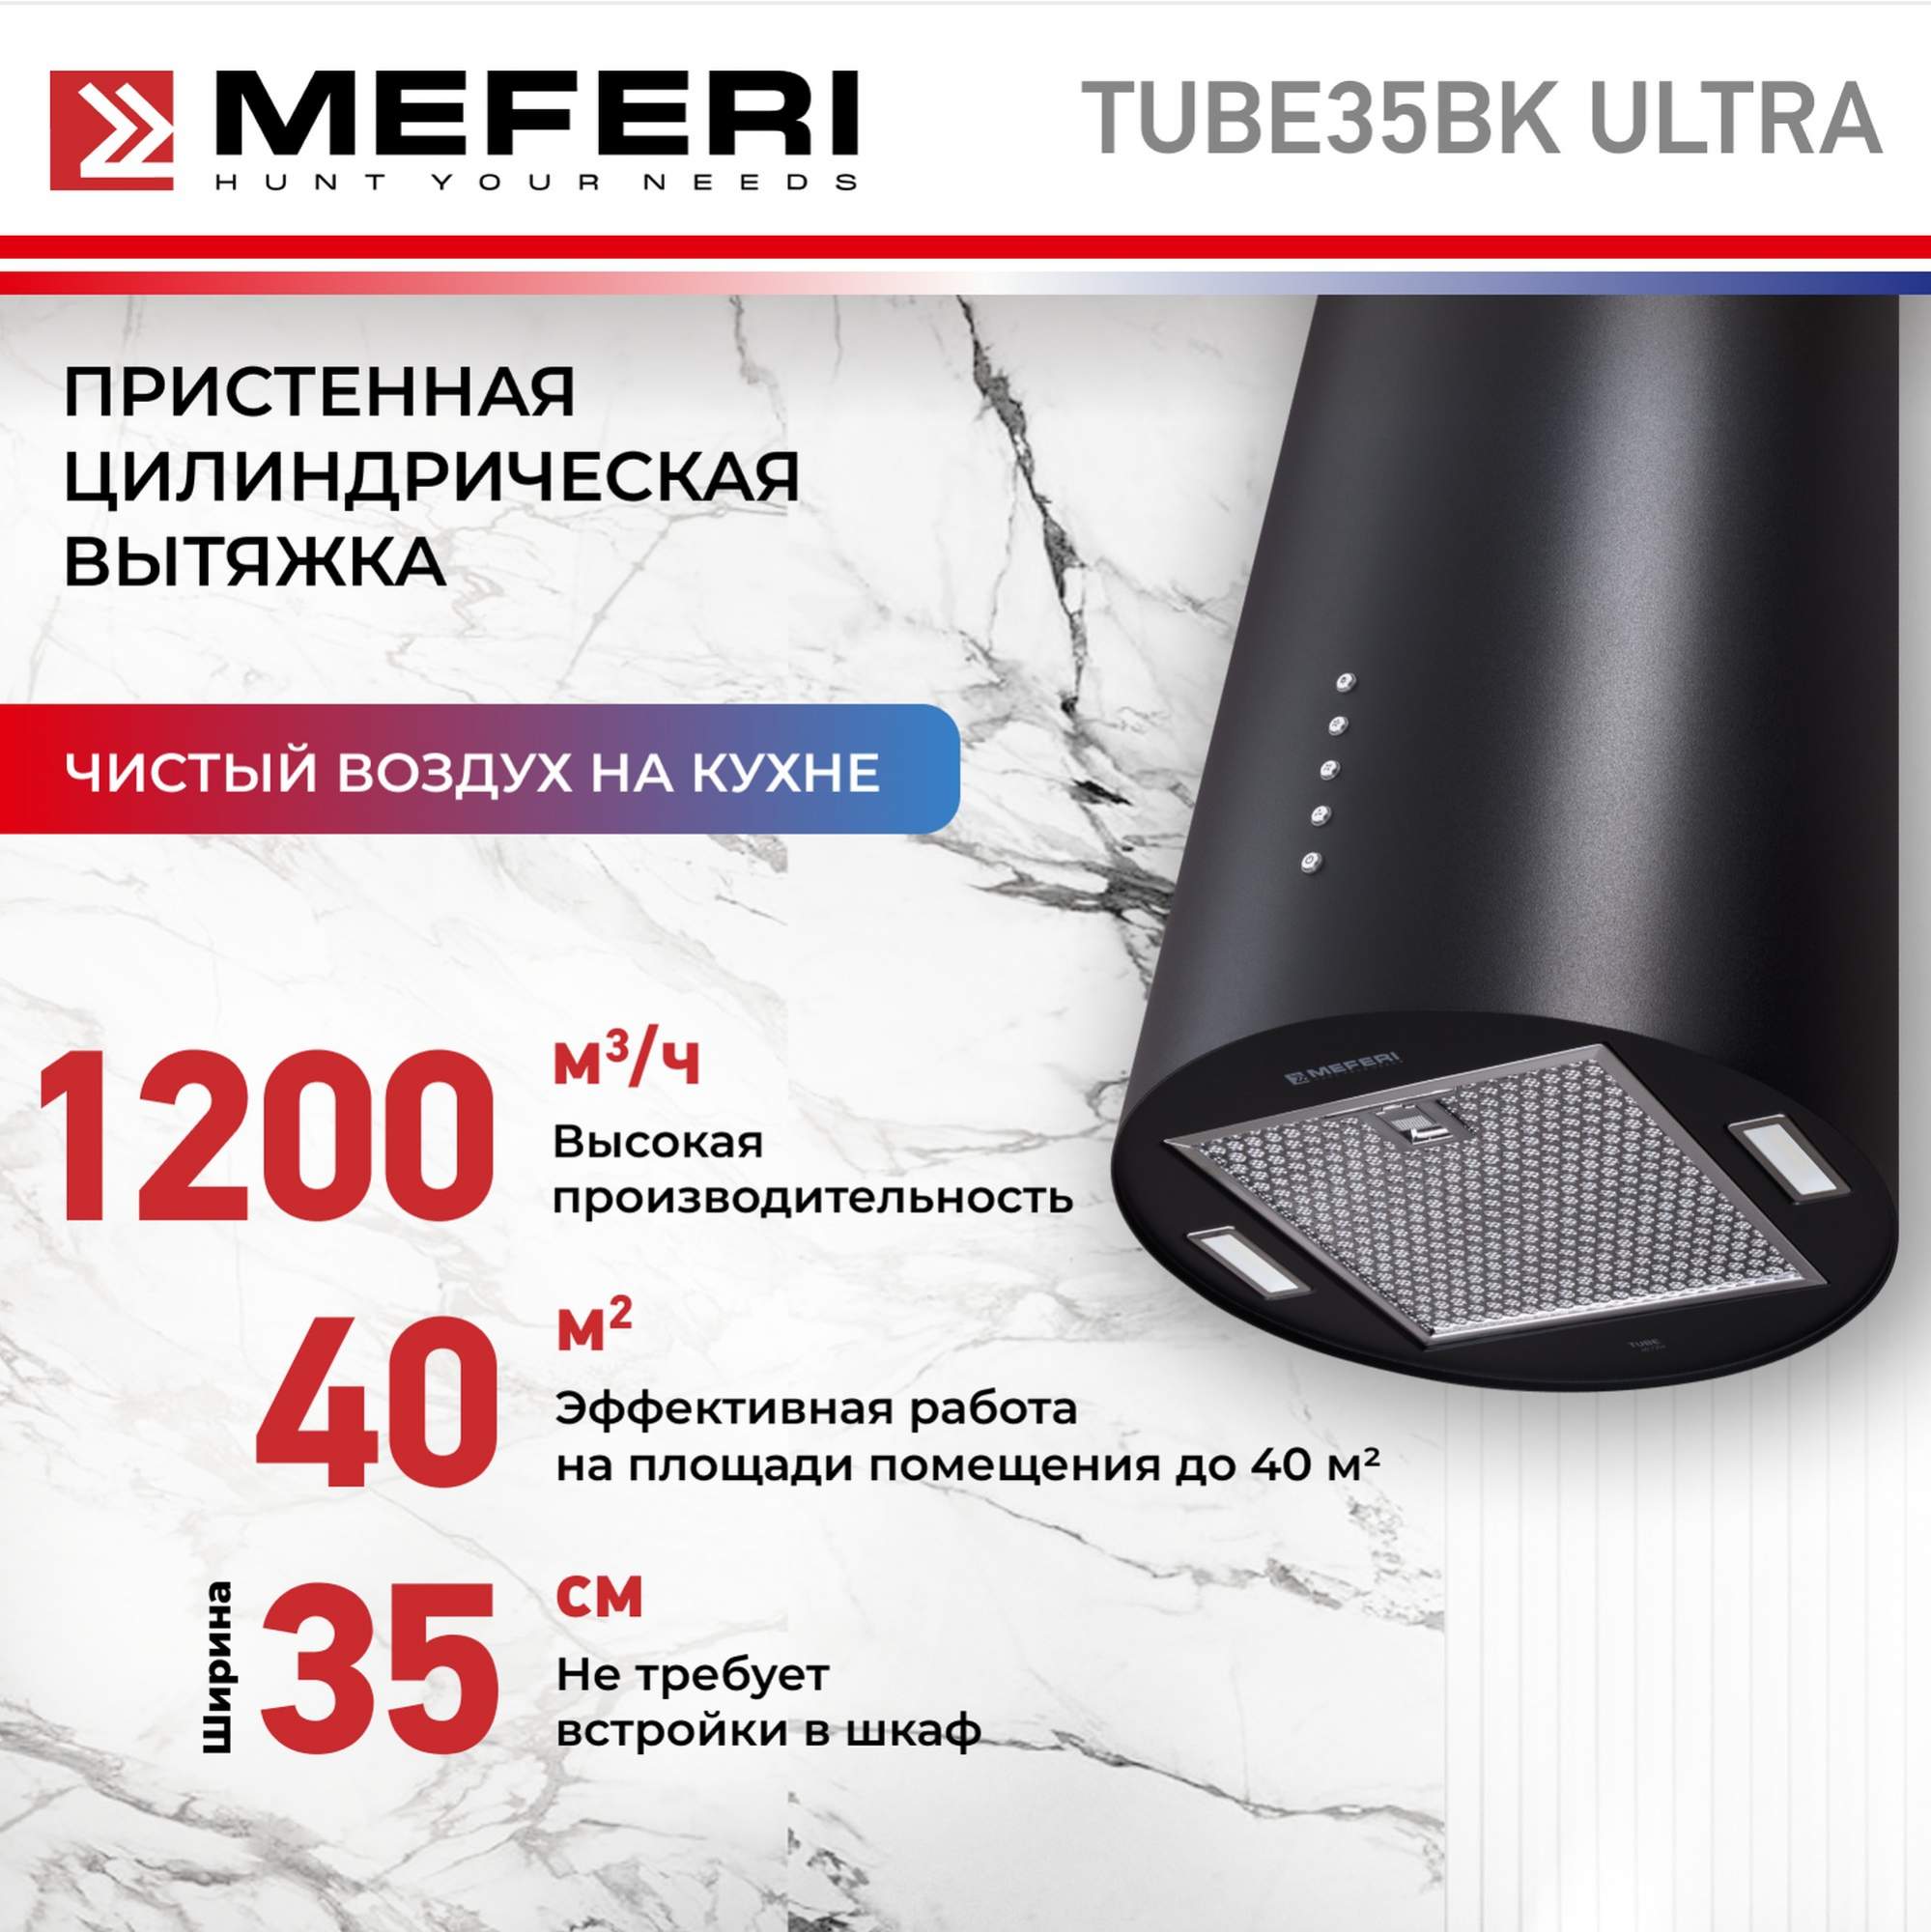 Цилиндрическая вытяжка Meferi TUBE35BK ULTRA uniview видеокамера ip цилиндрическая уличная фикс объектив 2 8мм 4mp smart ir 50m mic wdr 120db ultra 265 h 264 mjpeg easystar microsd poe